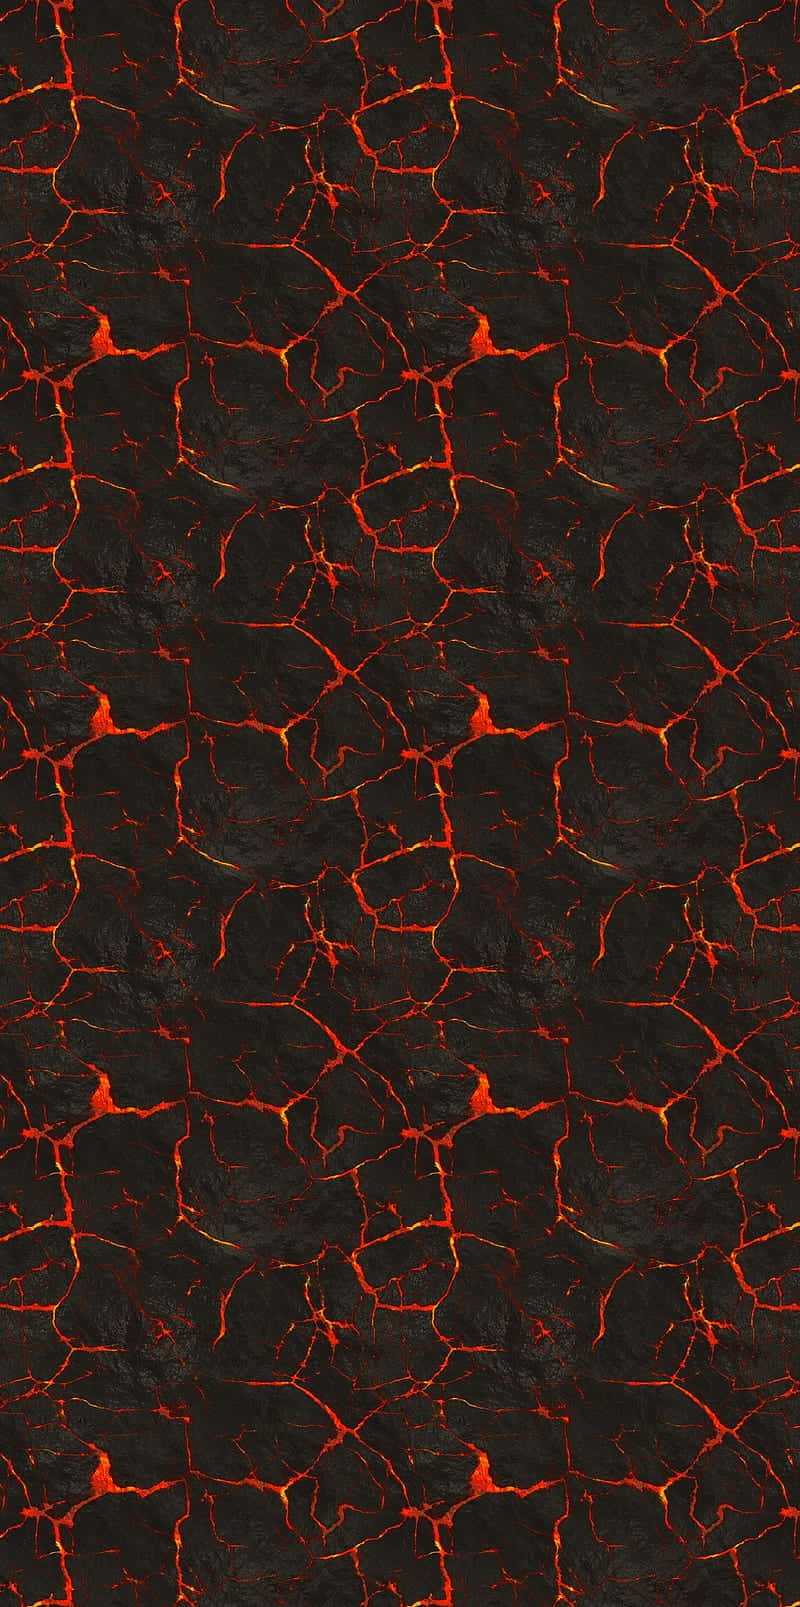 The molten heat of molten lava